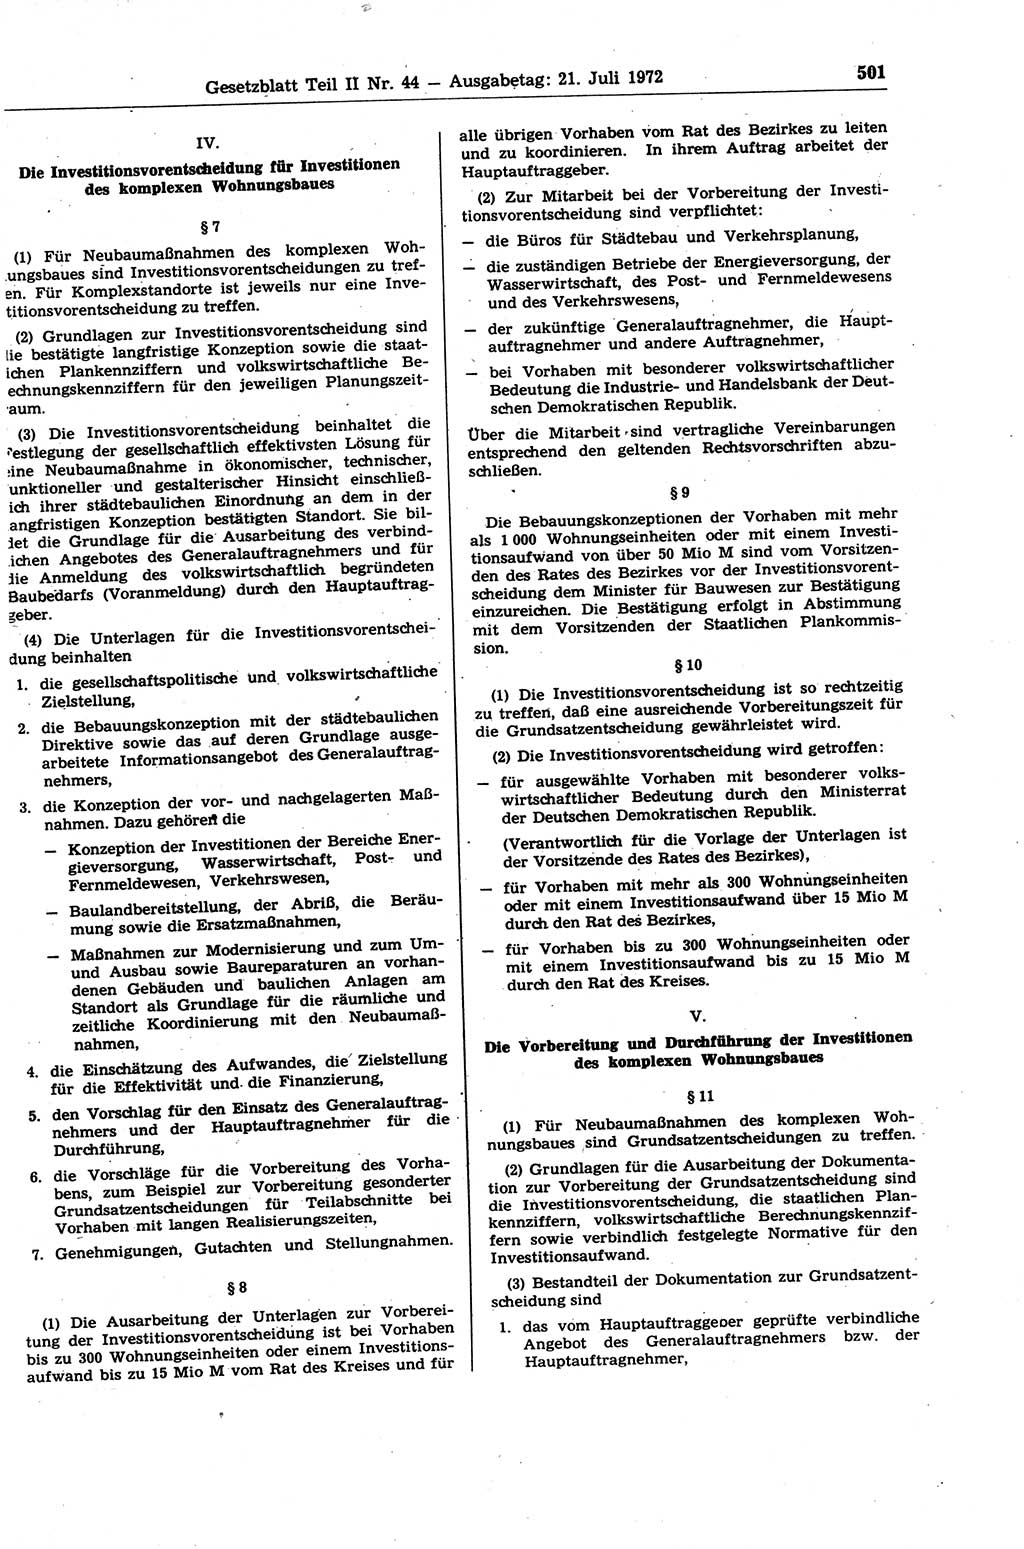 Gesetzblatt (GBl.) der Deutschen Demokratischen Republik (DDR) Teil ⅠⅠ 1972, Seite 501 (GBl. DDR ⅠⅠ 1972, S. 501)